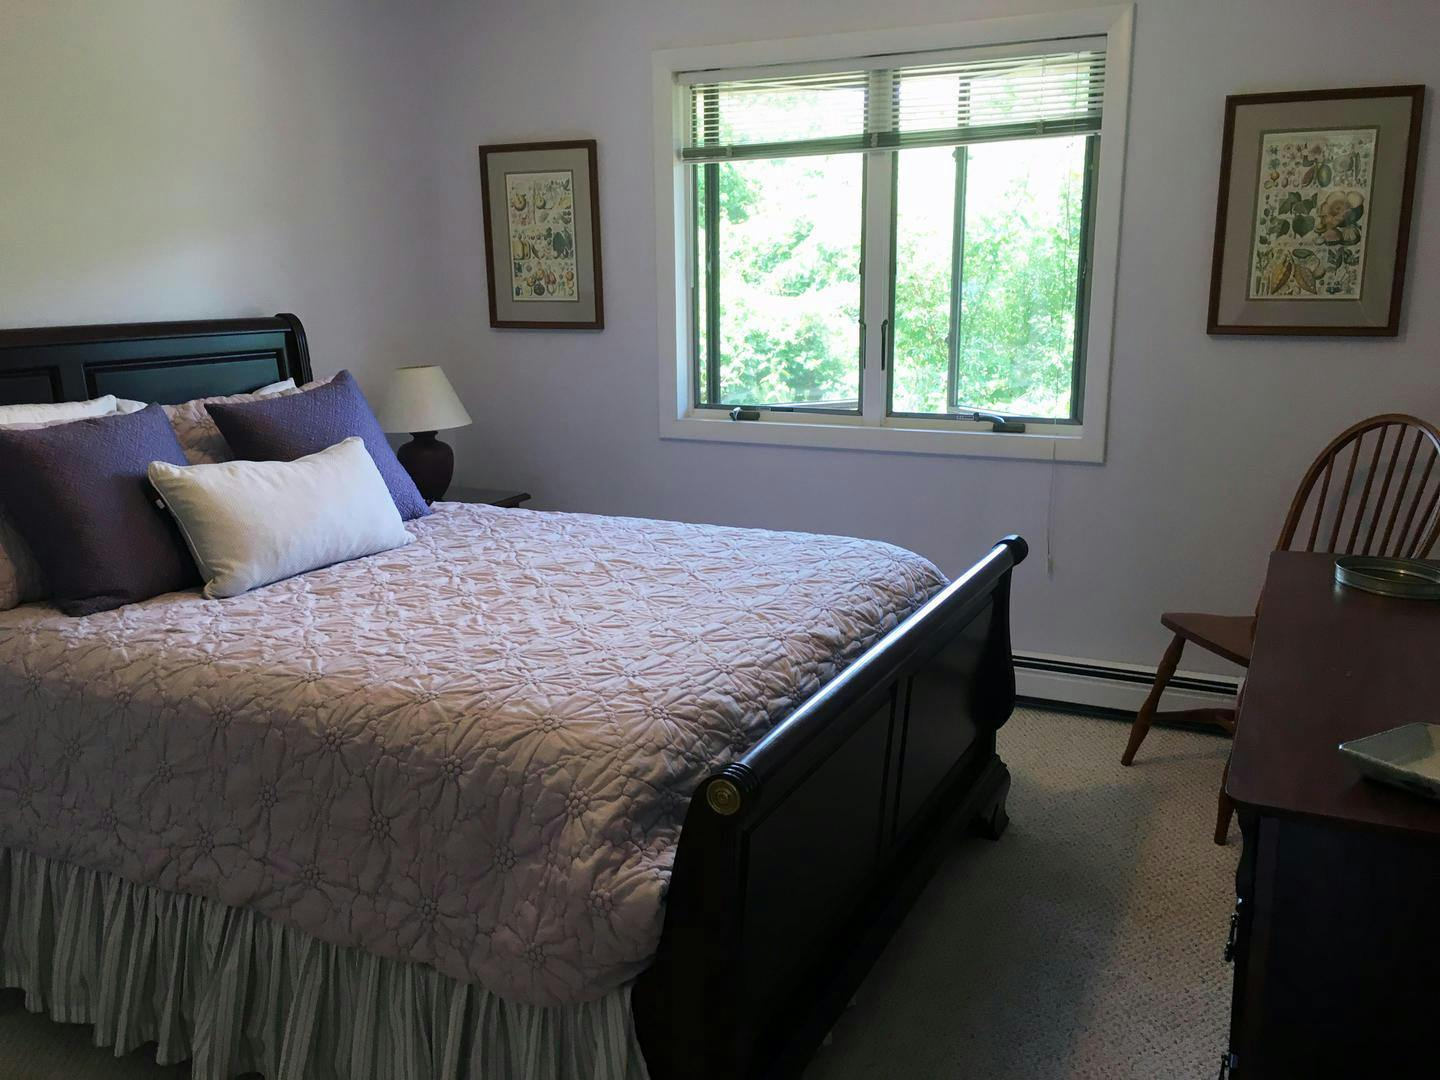 Image 3 - 4 Bedroom Rental in Edgartown, Katama - Sleeps 8